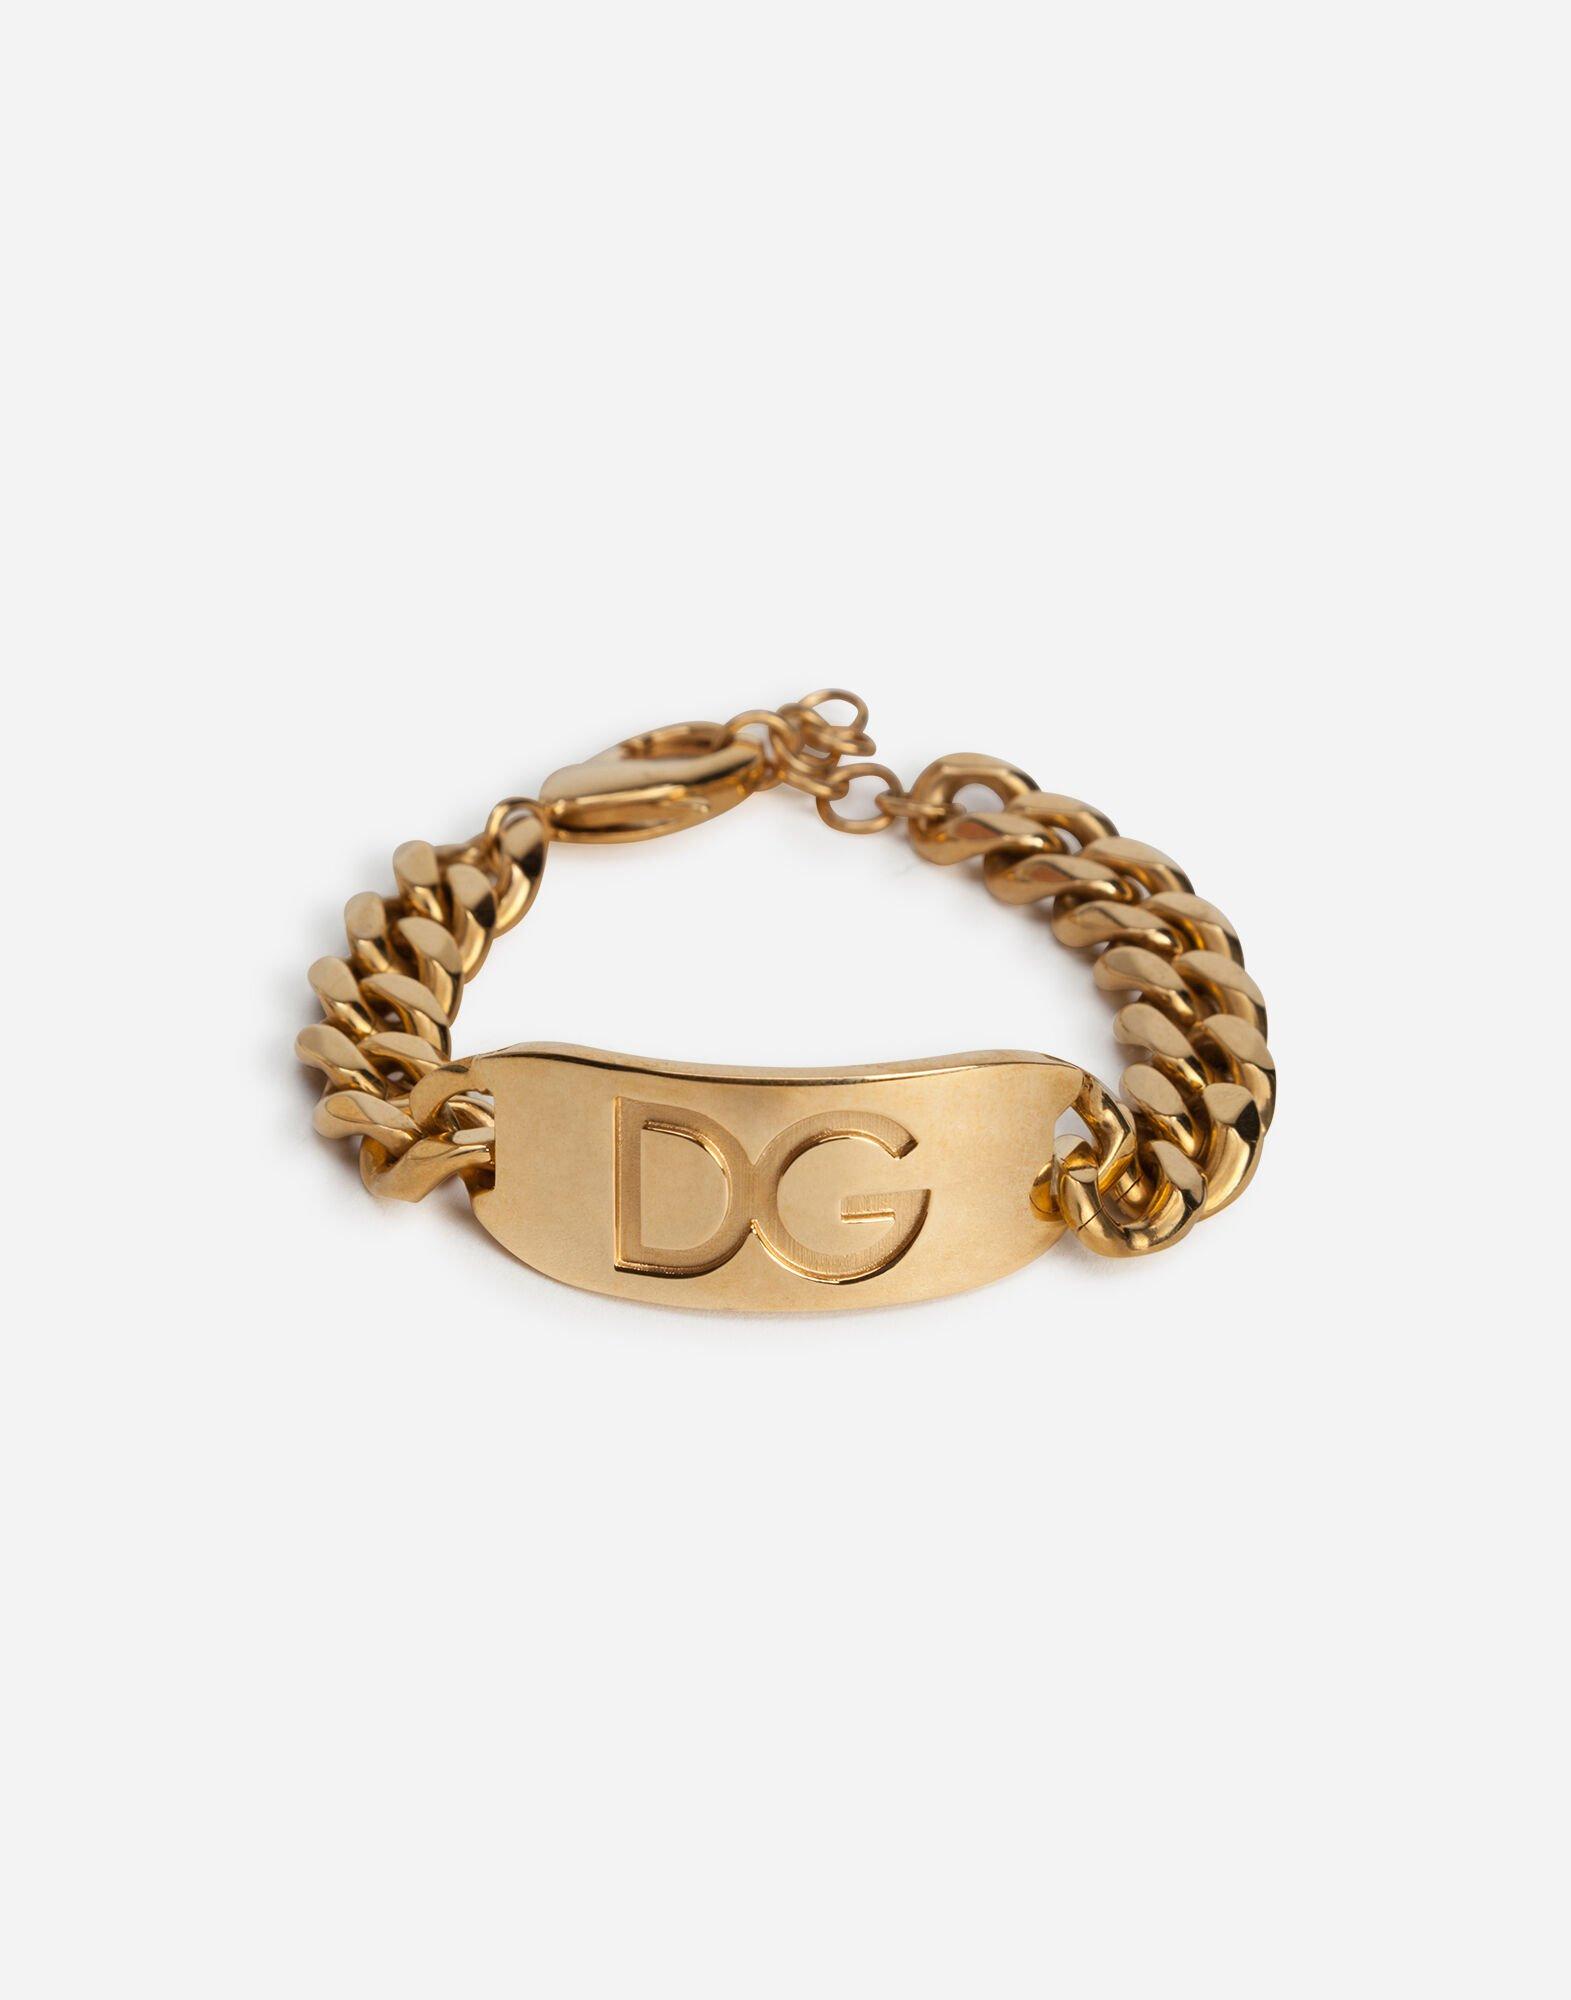 Dolce & Gabbana Dg Logo Bracelet in Gold (Metallic) for Men - Lyst